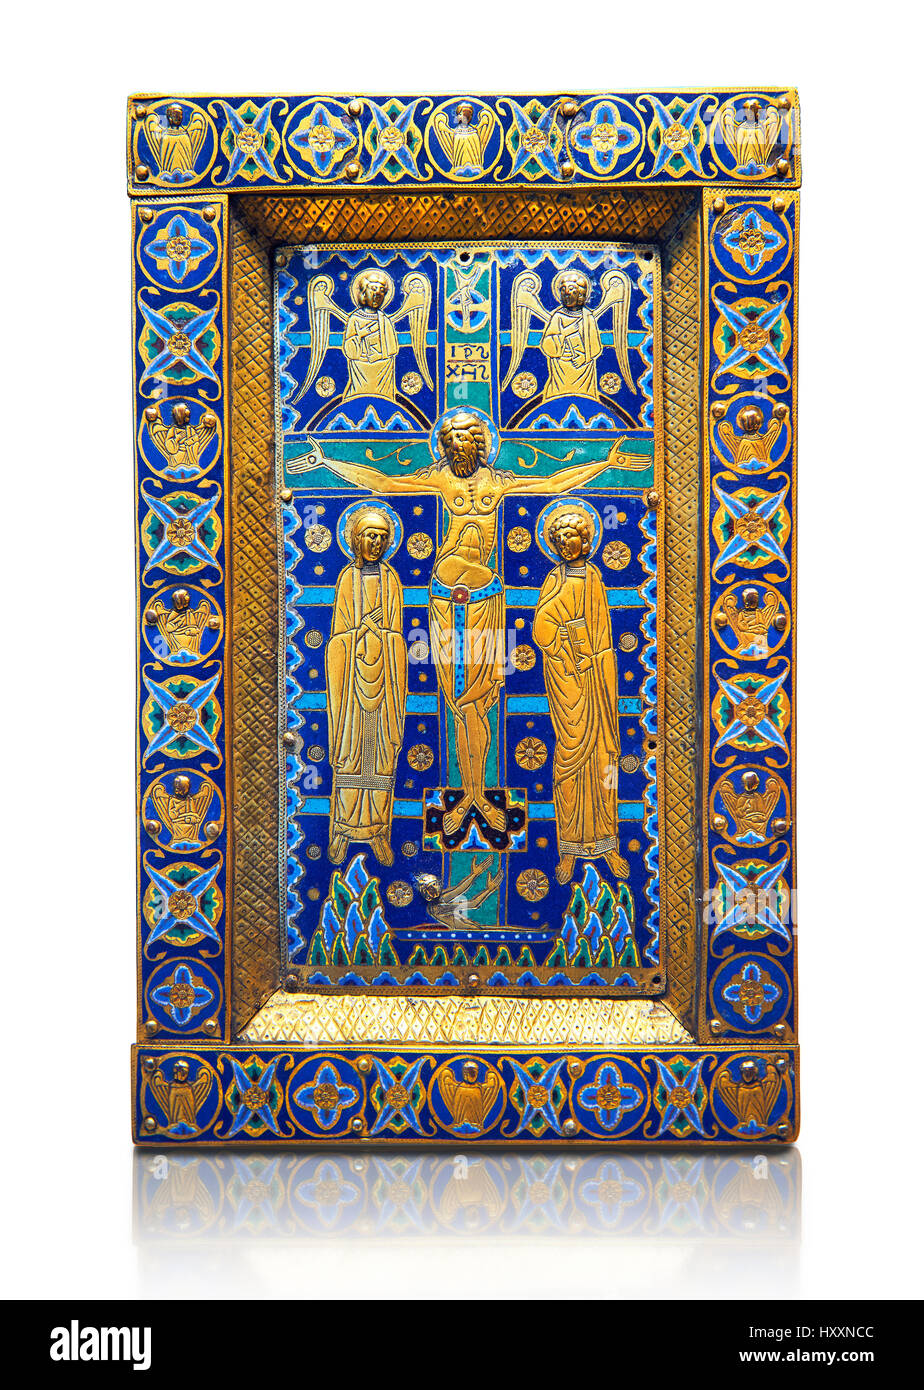 Mittelalterliche emaillierten Panel Darstellung der Kreuzigung, Ende des 12. Jahrhunderts aus Limoges Emaille auf Gold. AD. Inv-OA 7285, dem Louvre, Paris. Stockfoto